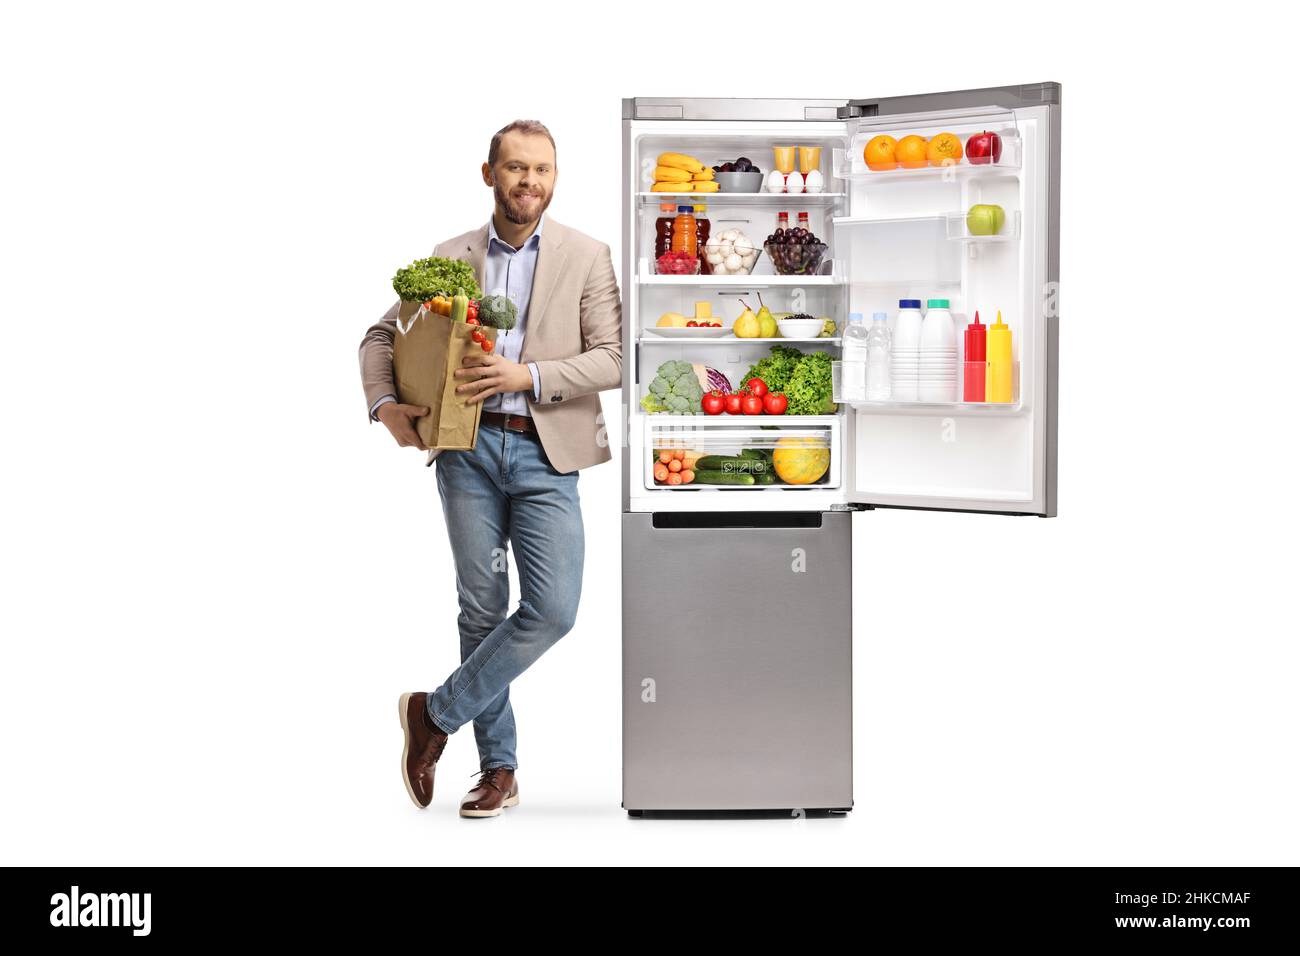 Porträt eines jungen, zwanglosen Mannes, der eine Einkaufstasche in der Hand hält und sich auf einen Kühlschrank stützt, wobei gesunde Lebensmittel auf weißem Hintergrund isoliert sind Stockfoto